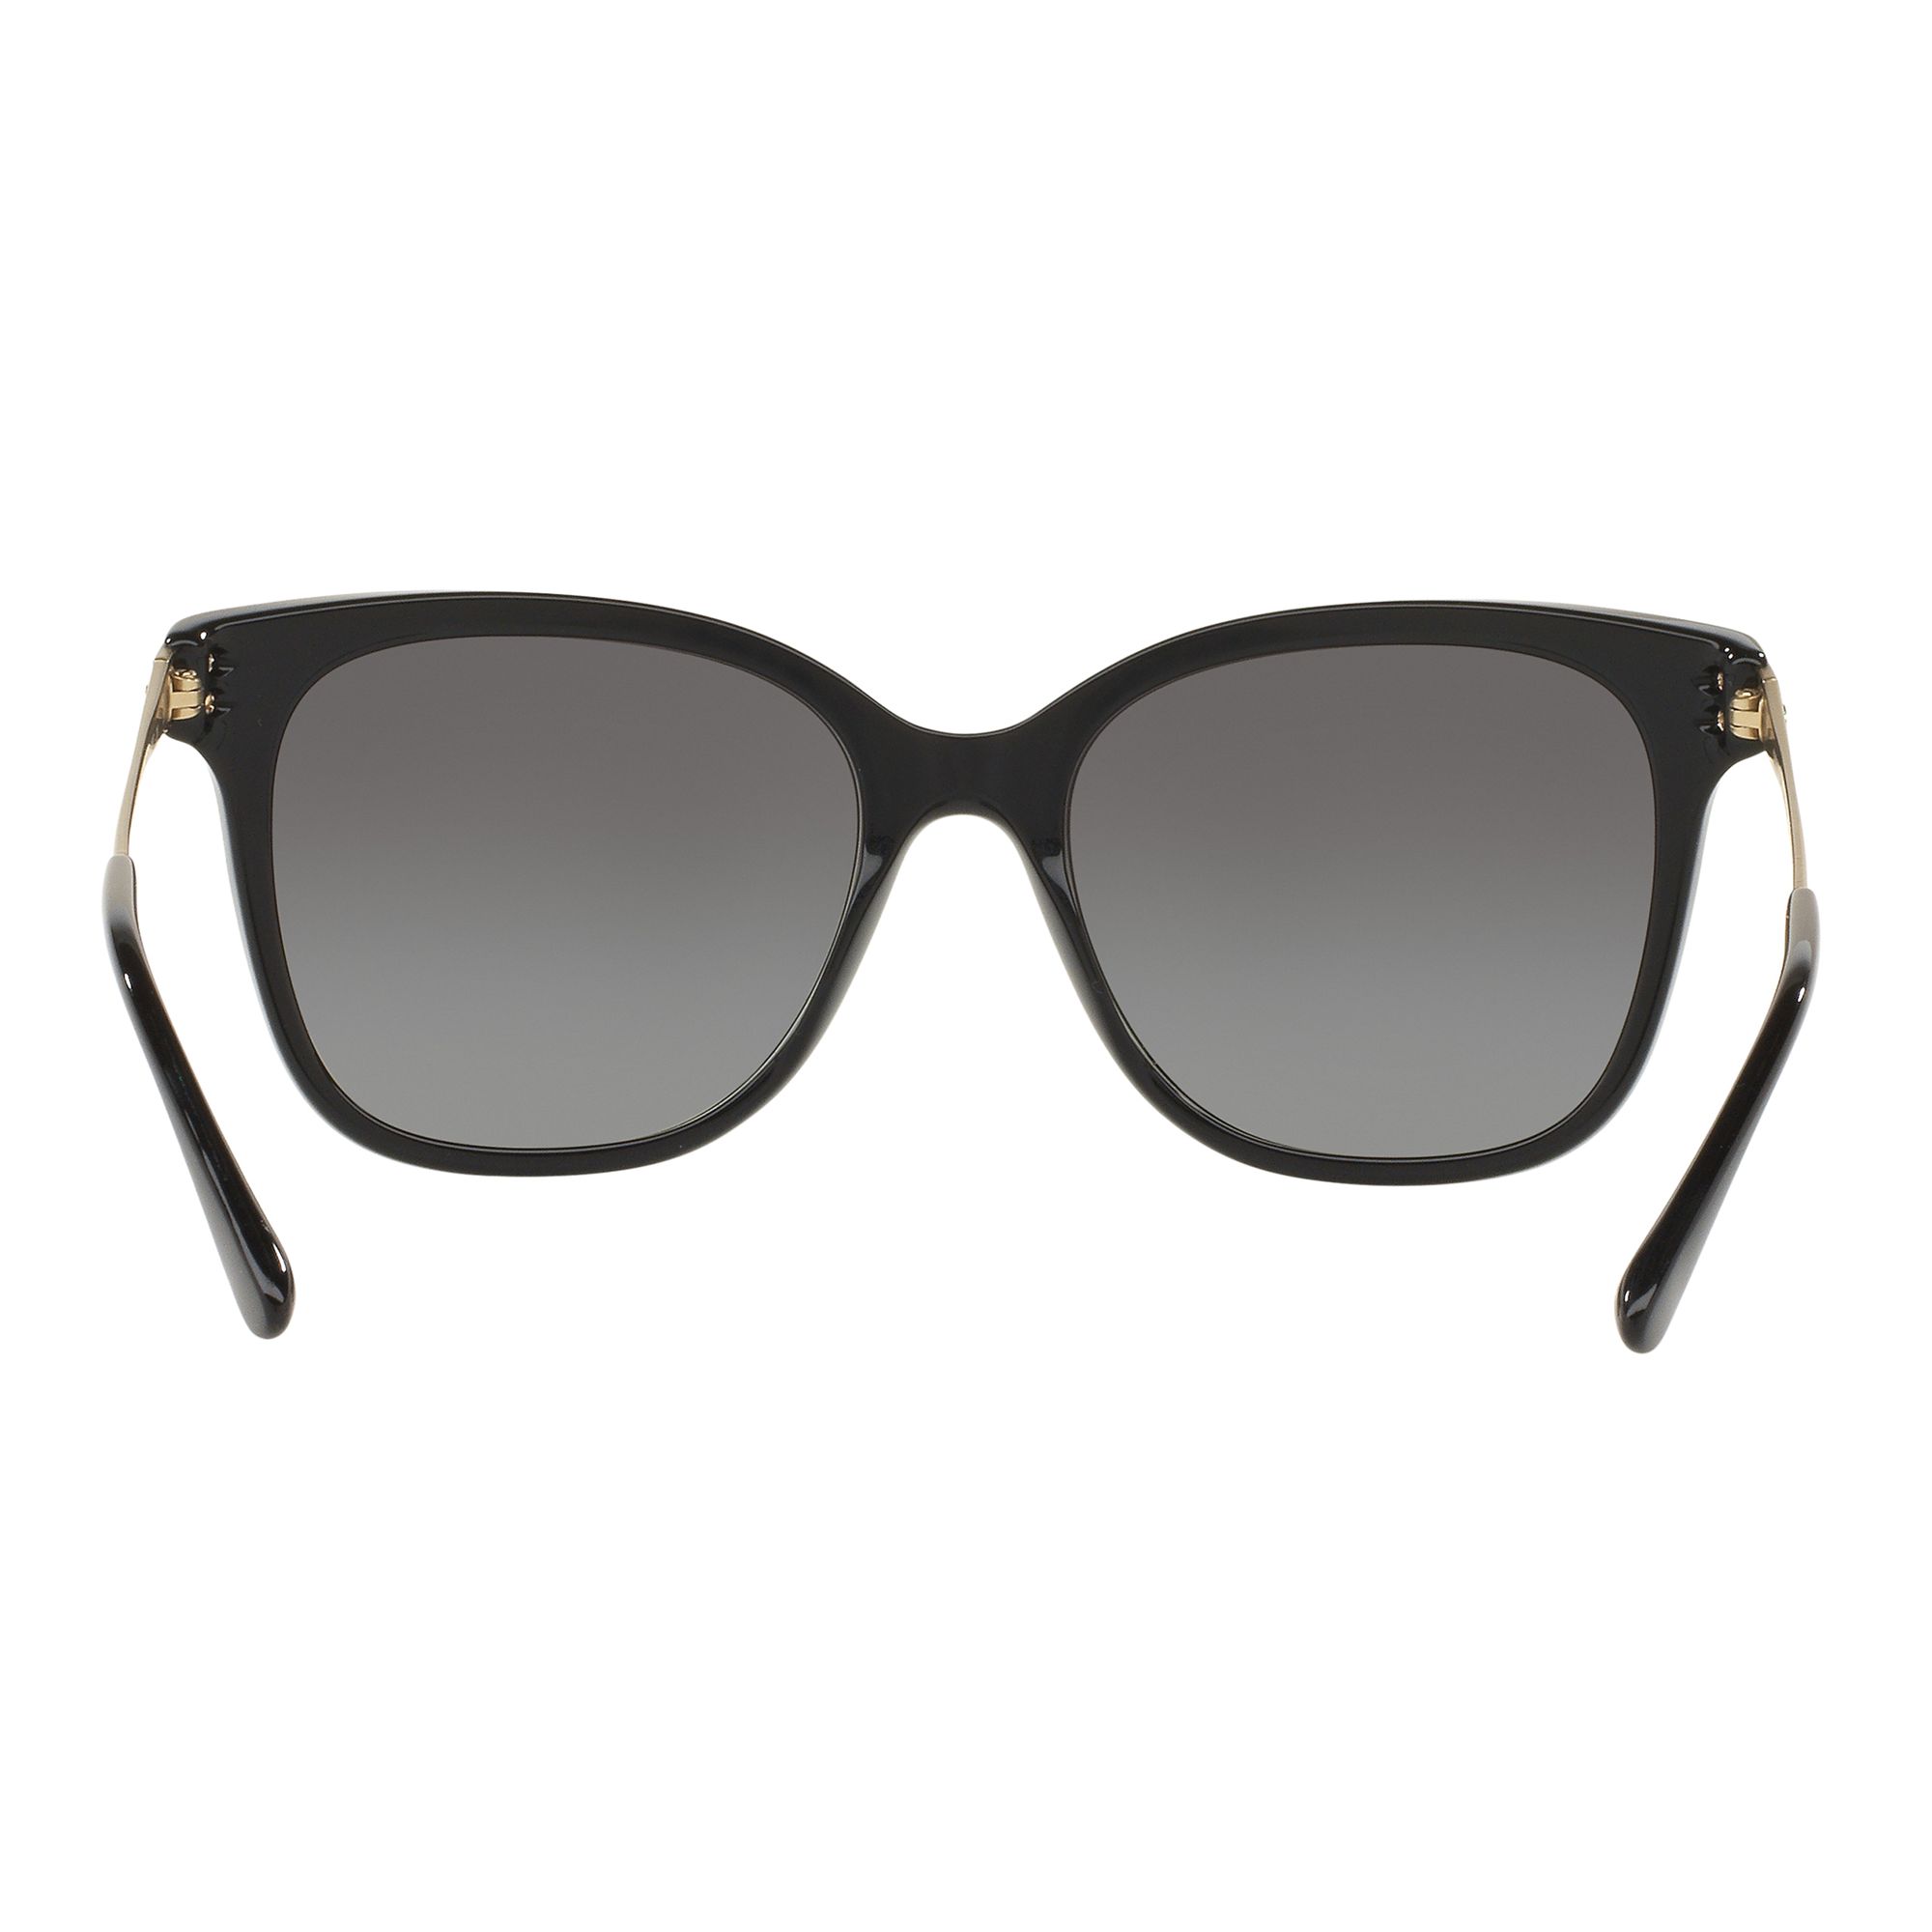 Giorgio Armani AR8074 Gradient Square Sunglasses, Black